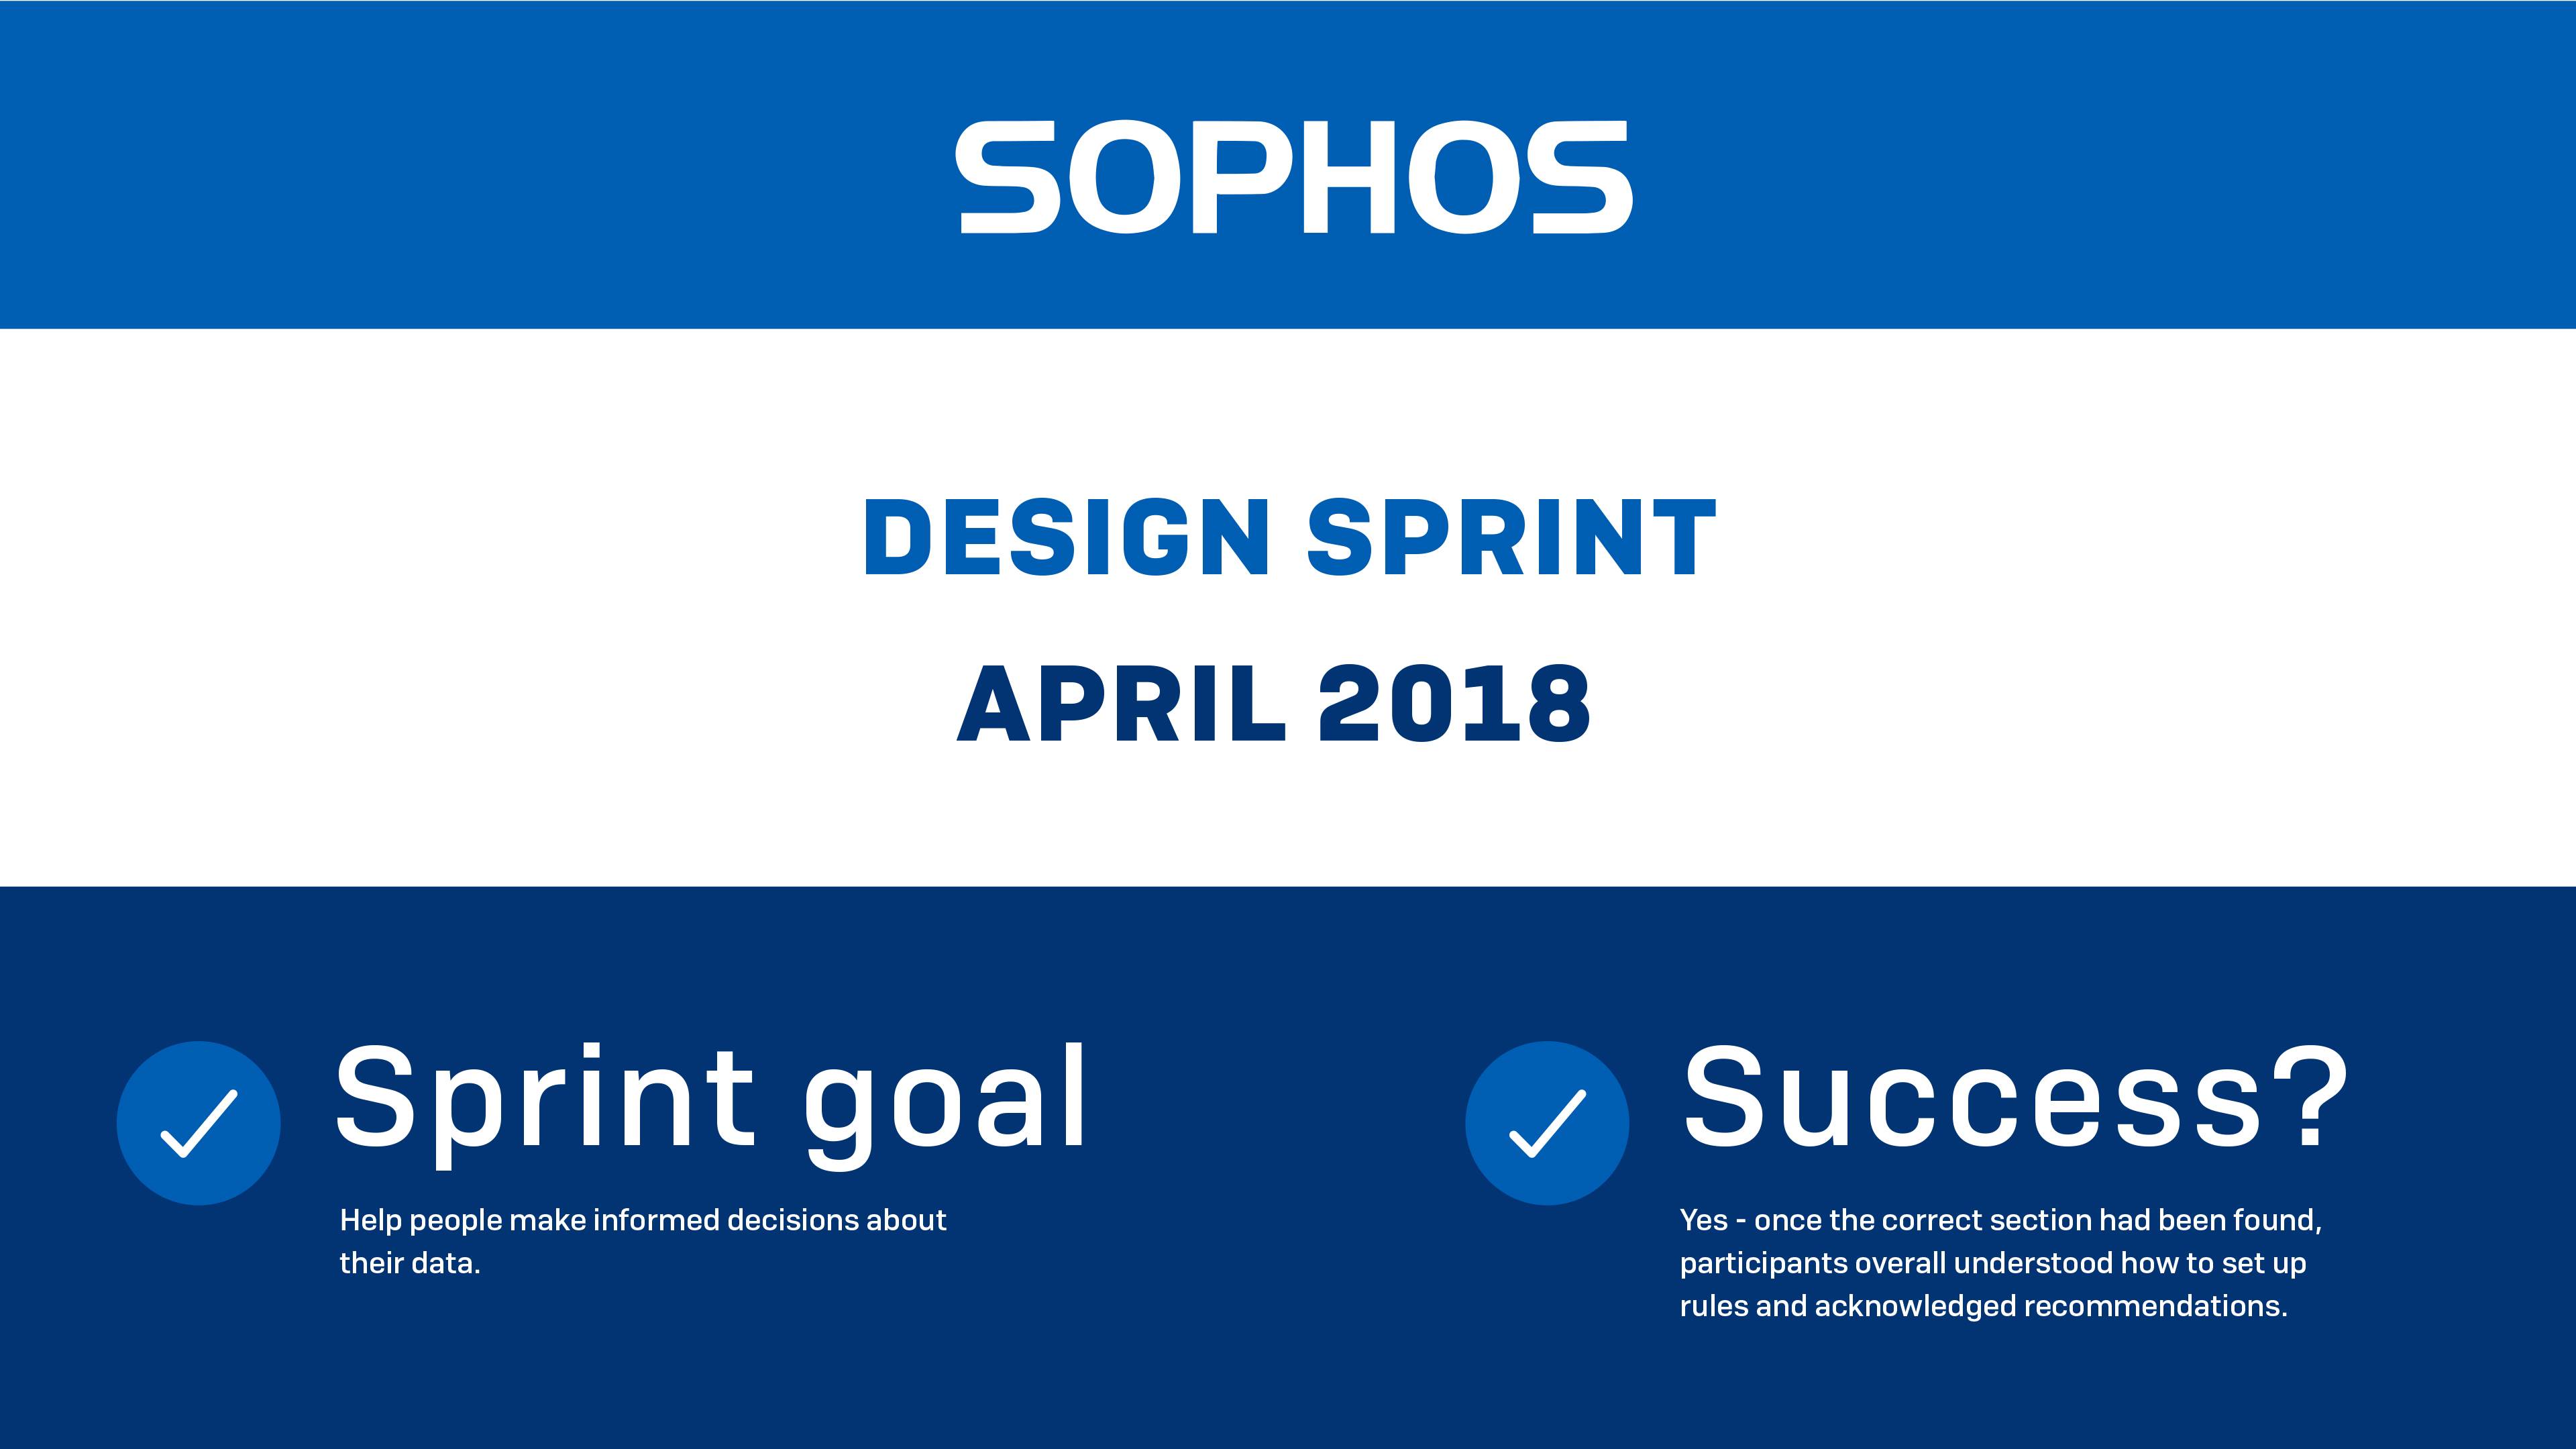 Poster for Sophos design sprint April 2018